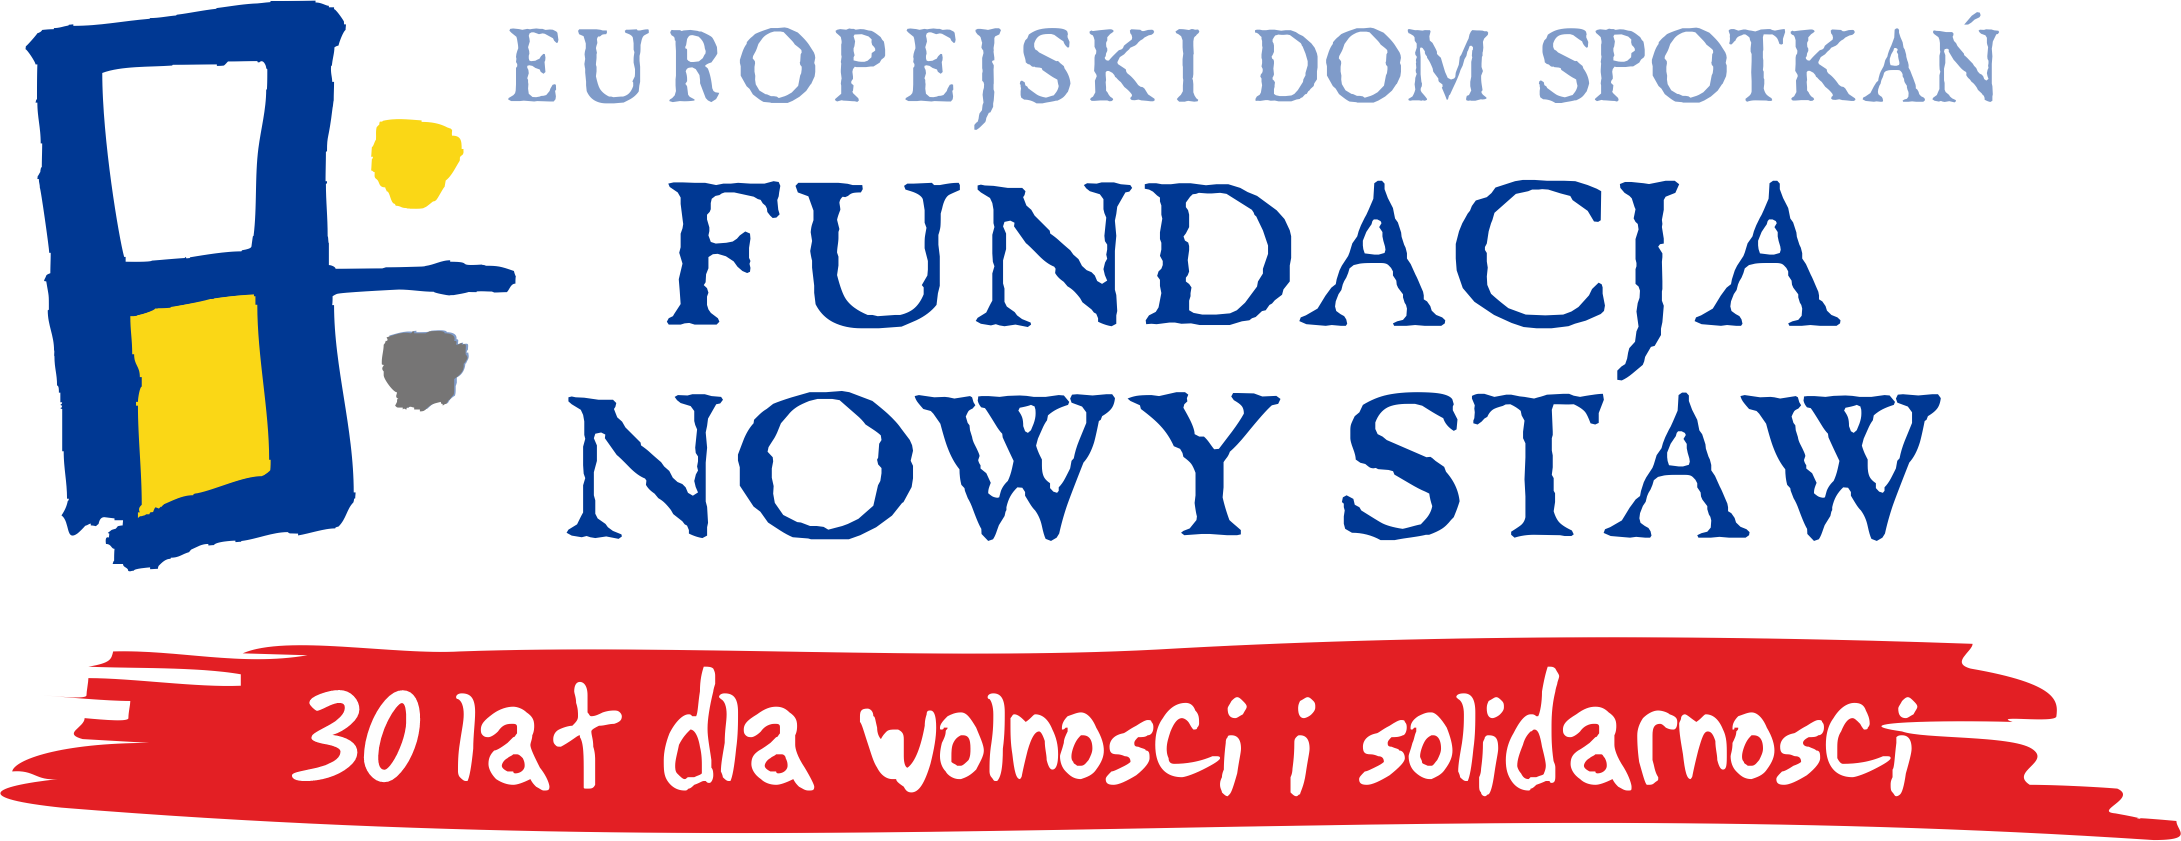 Logo Europejskiego Domu Spotkań Fundacja Nowy Staw.